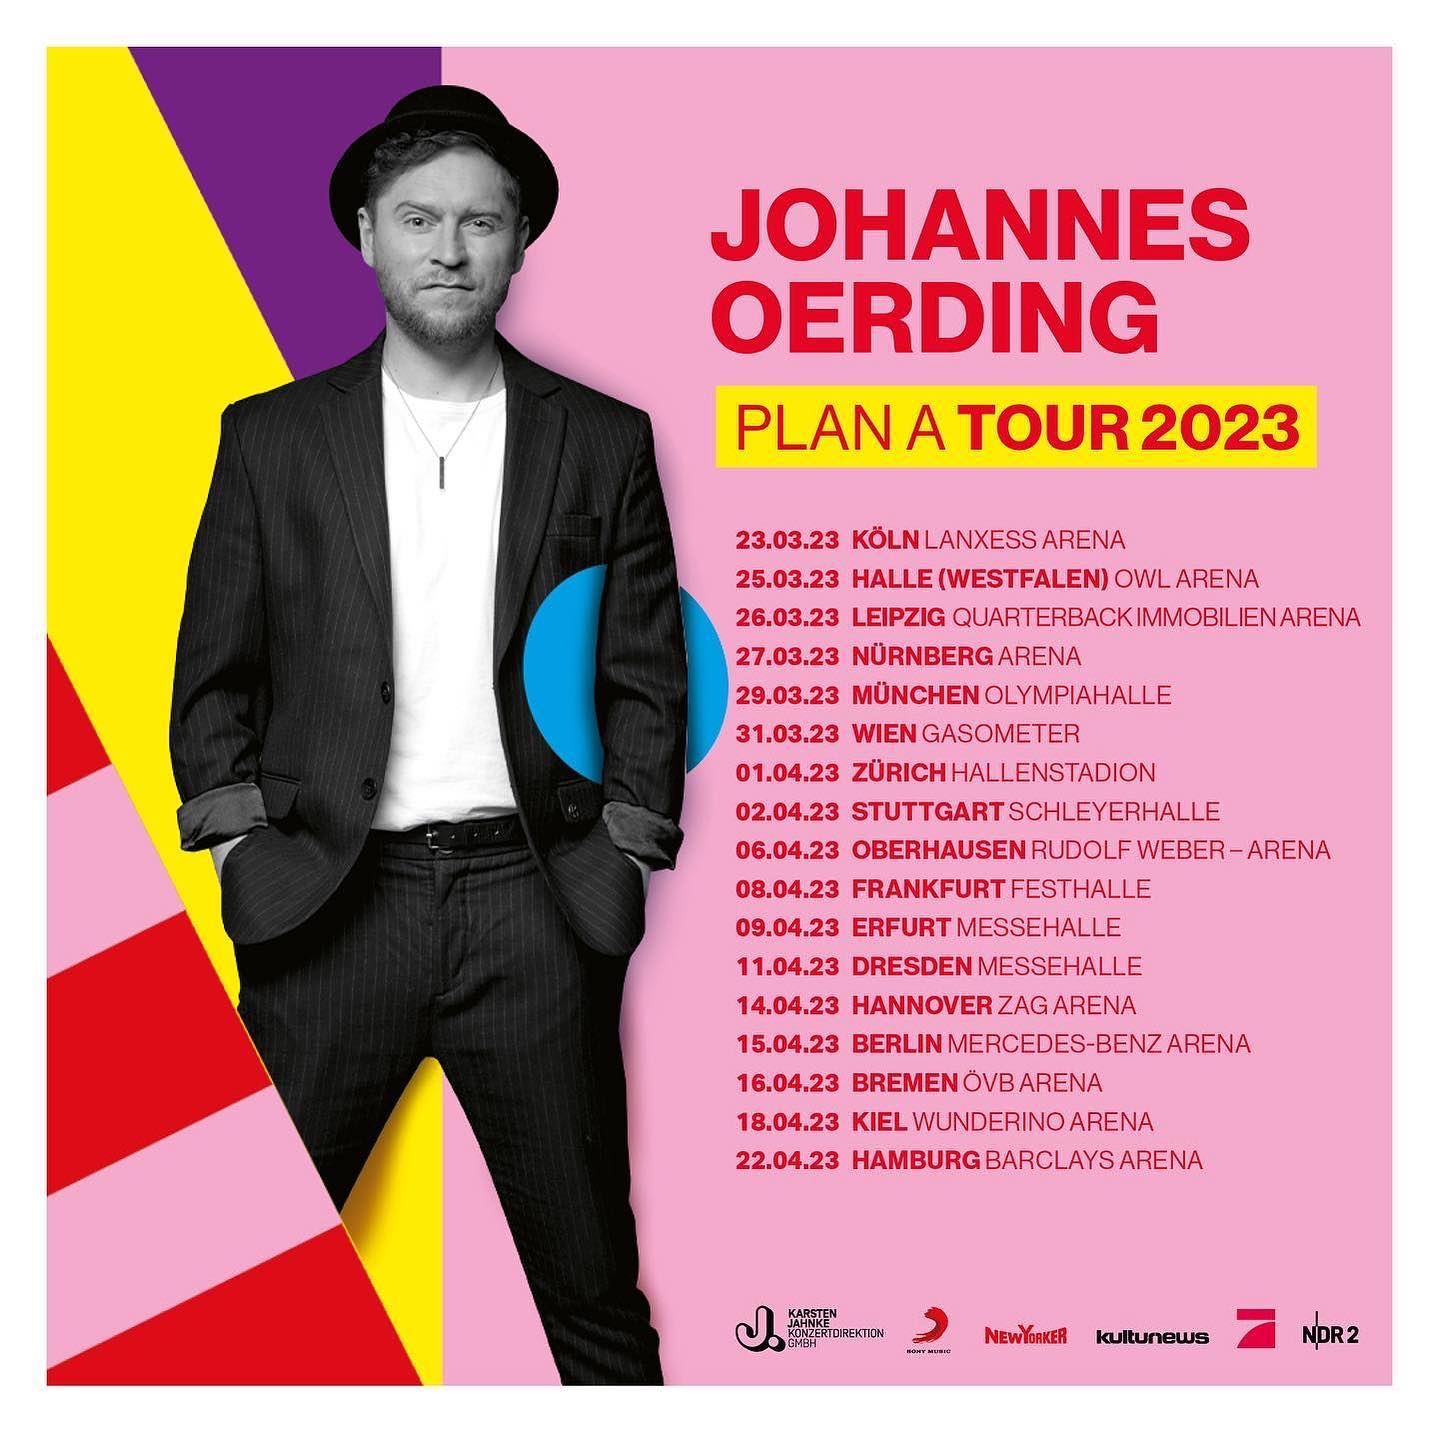 johannes oerding tour 2023 stuttgart